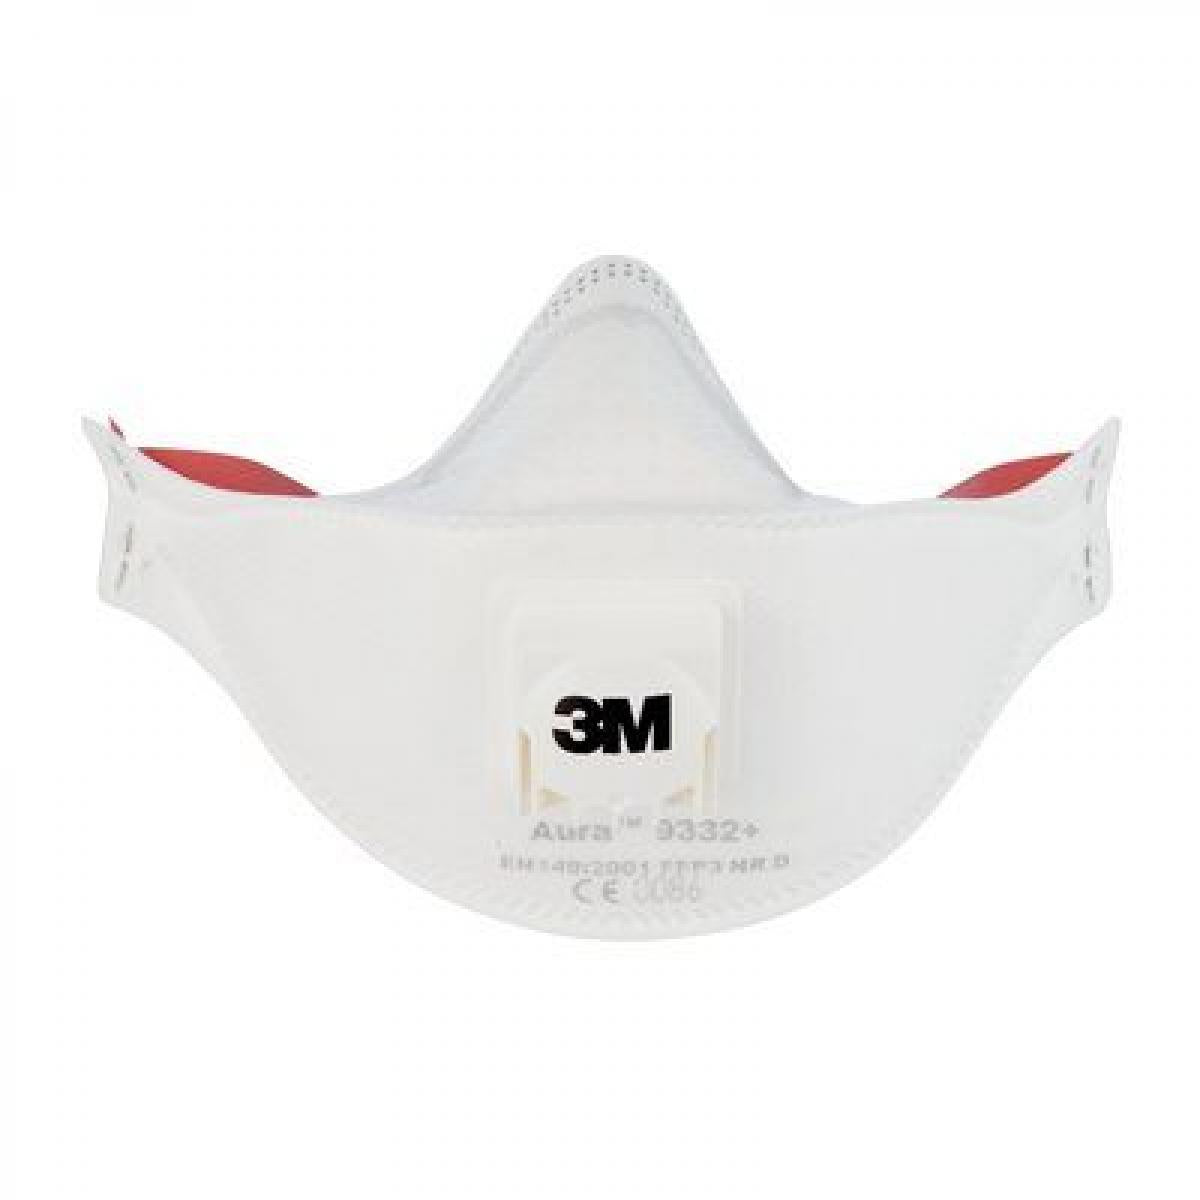 3M Face Mask Aura Disposable Respirator - FFP3 - Valved 9332+